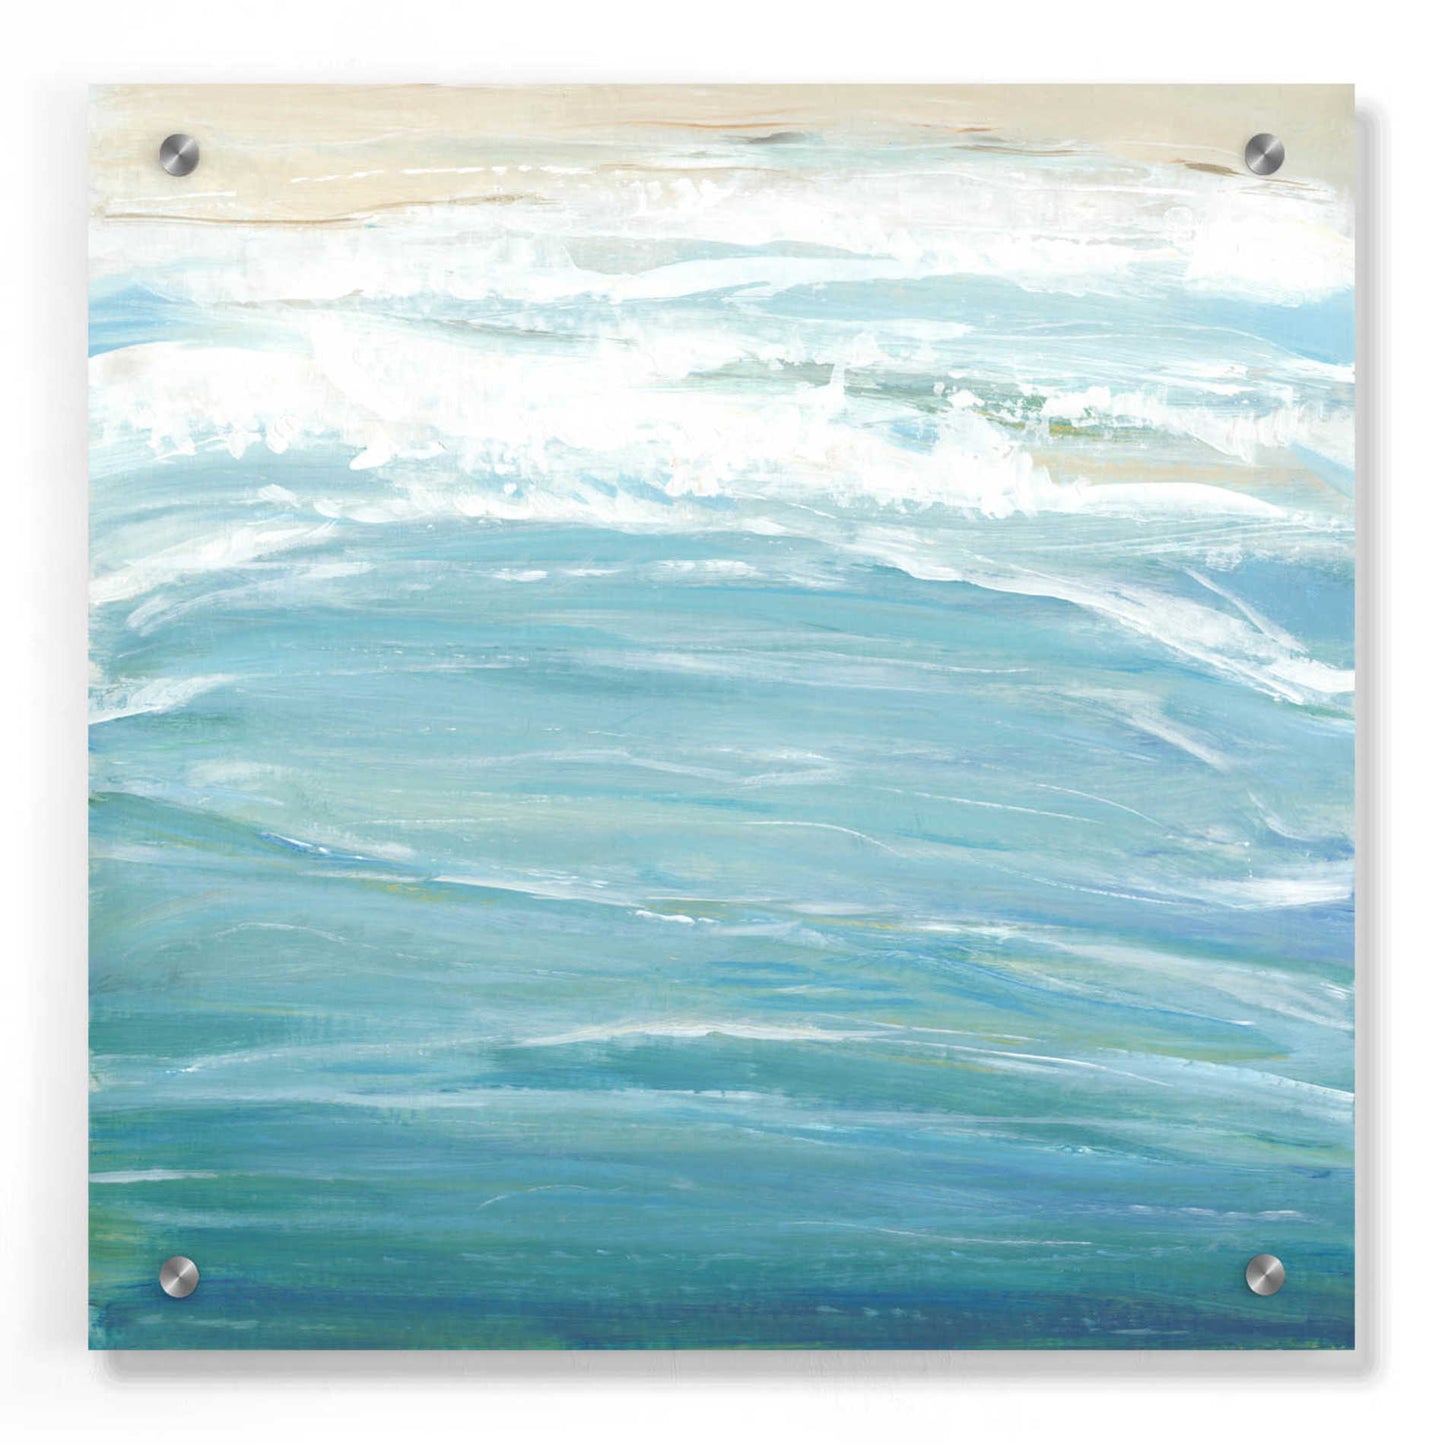 Epic Art 'Sea Breeze Coast II' by Tim O'Toole, Acrylic Glass Wall Art,36x36